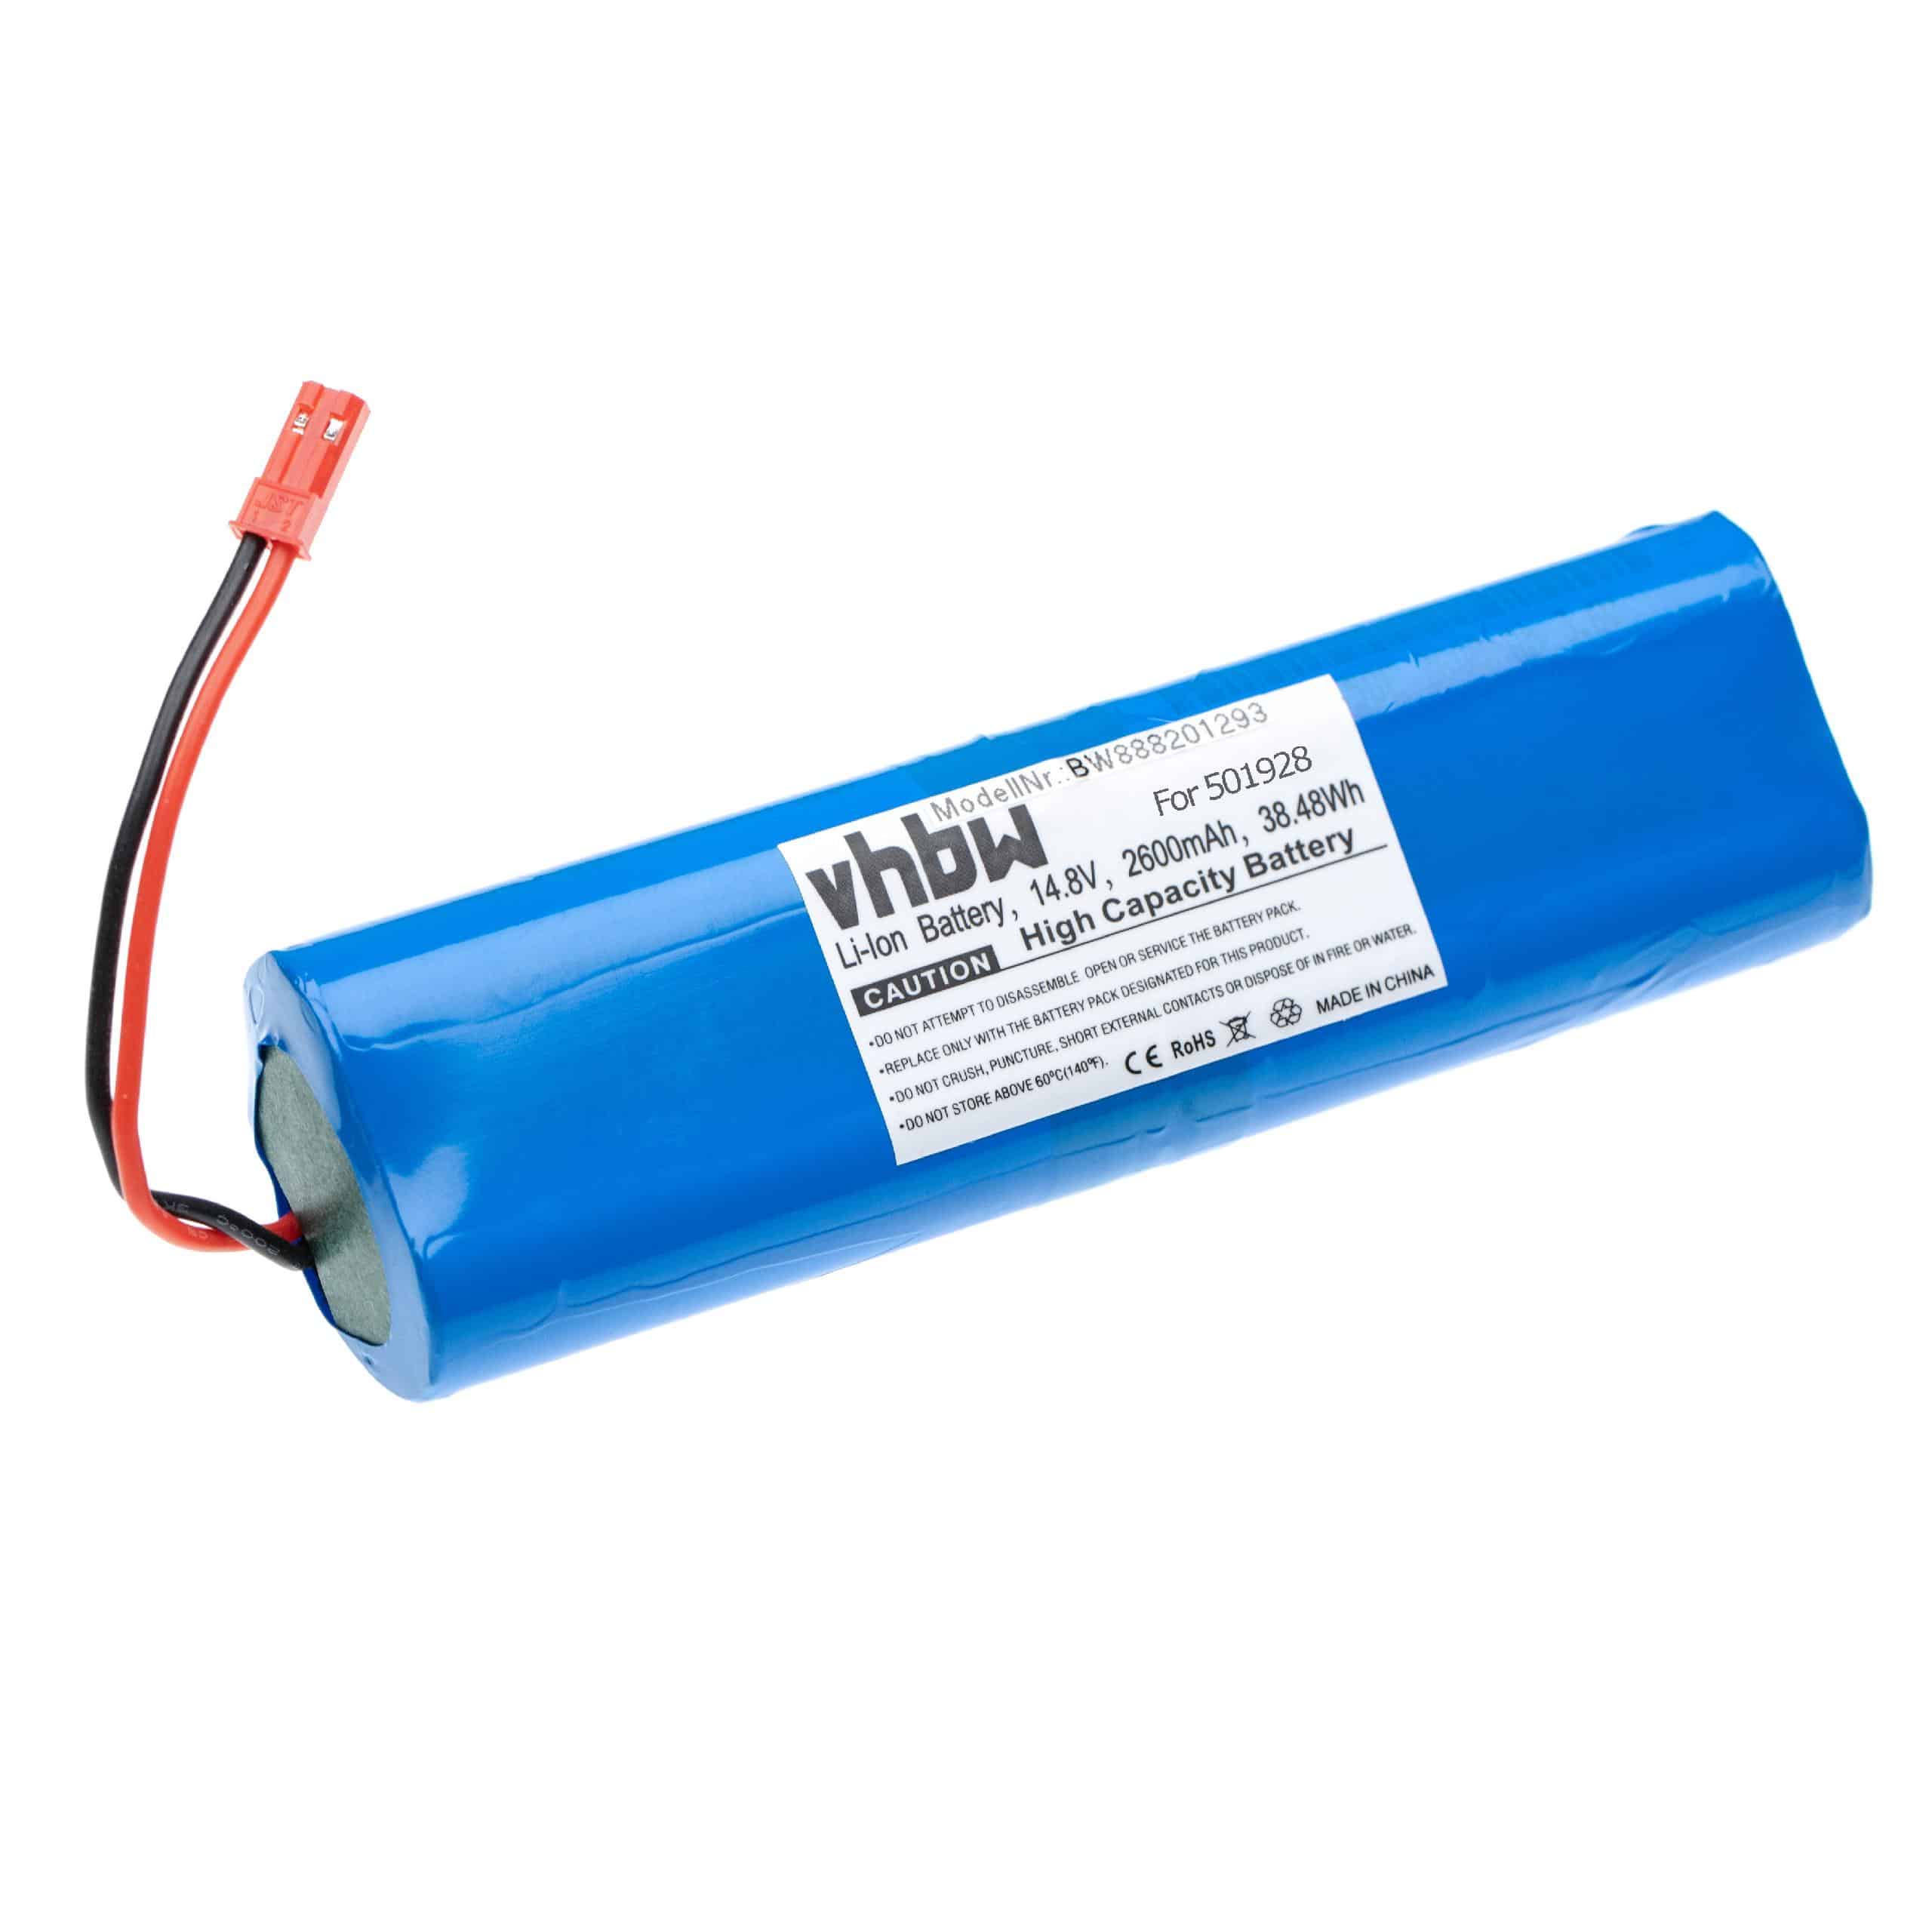 Batterie remplace Zaco 501928 pour robot aspirateur - 2600mAh 14,4V Li-ion